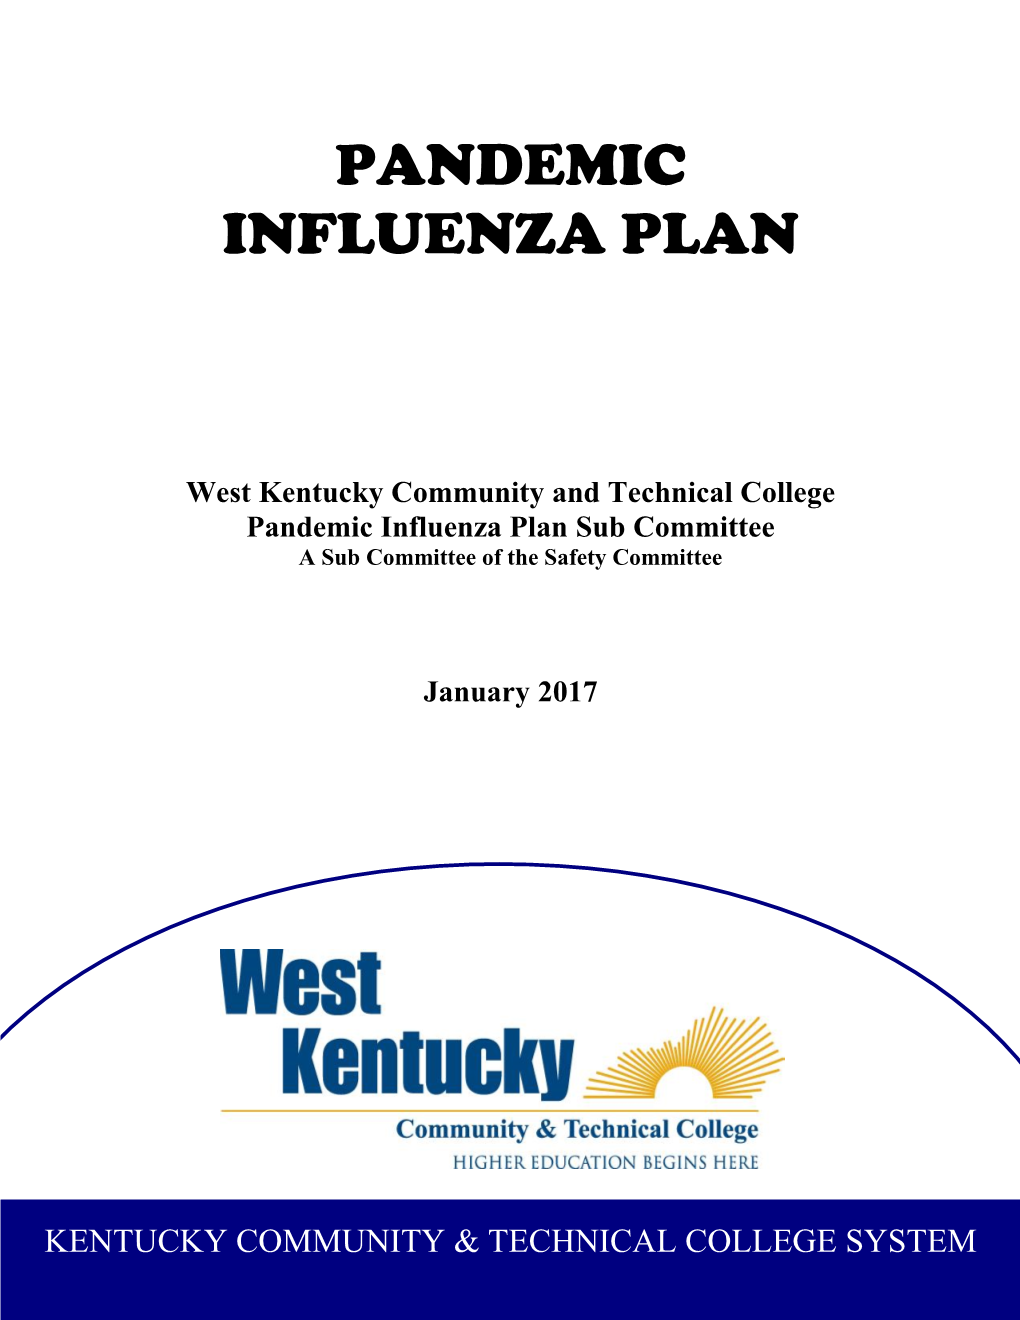 Pandemic Influenza Plan Maintenance